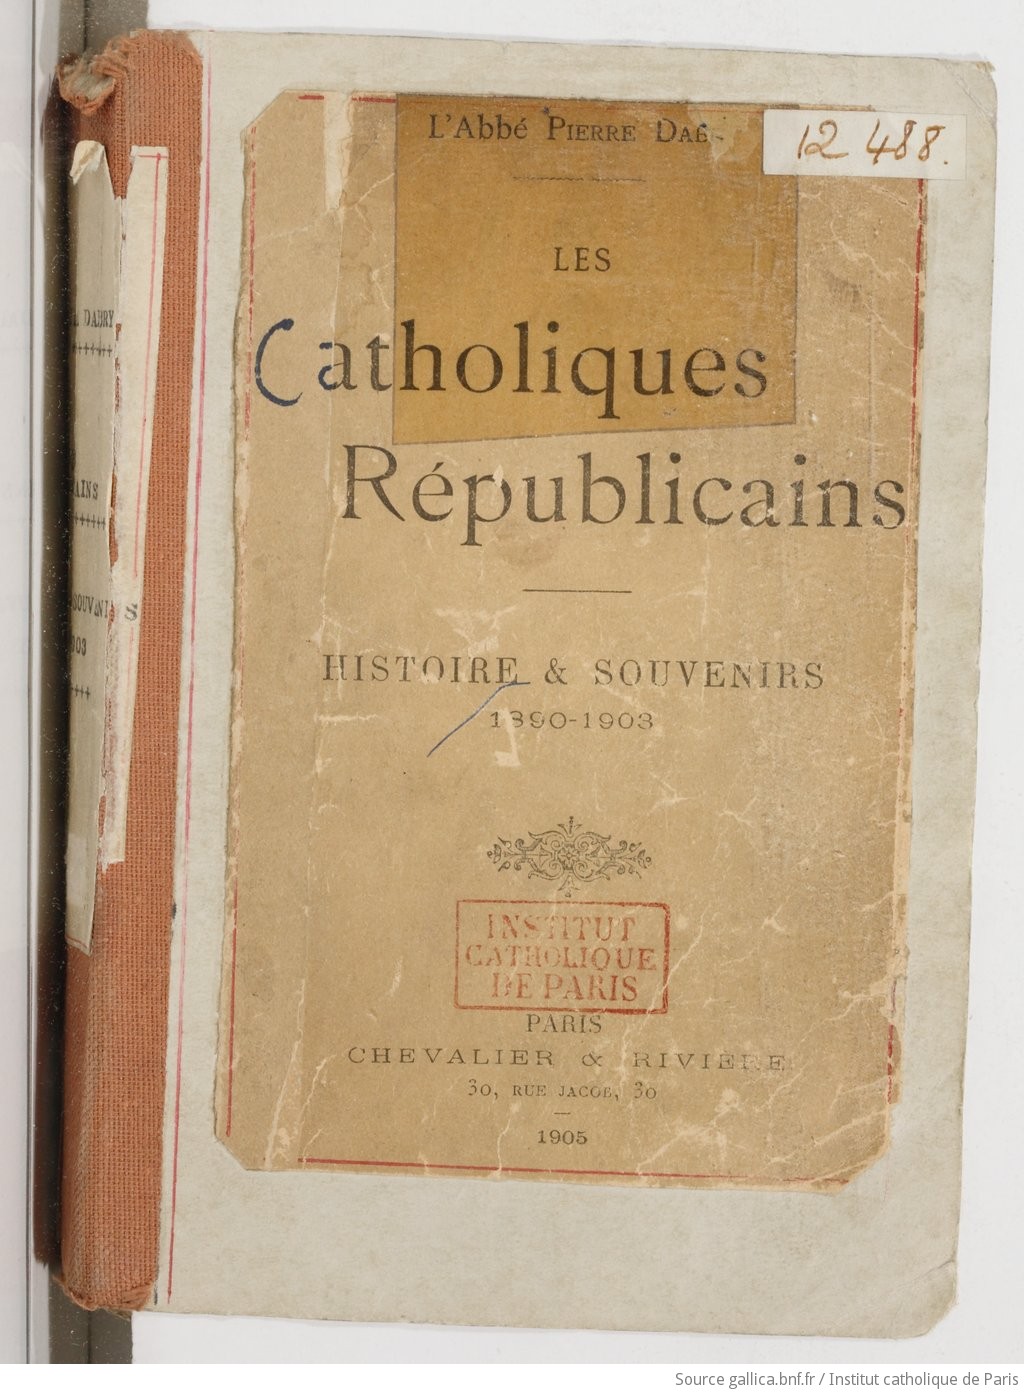 Les Catholiques républicains, histoire et souvenirs, 1890-1903 / L'Abbé Pierre Dabry